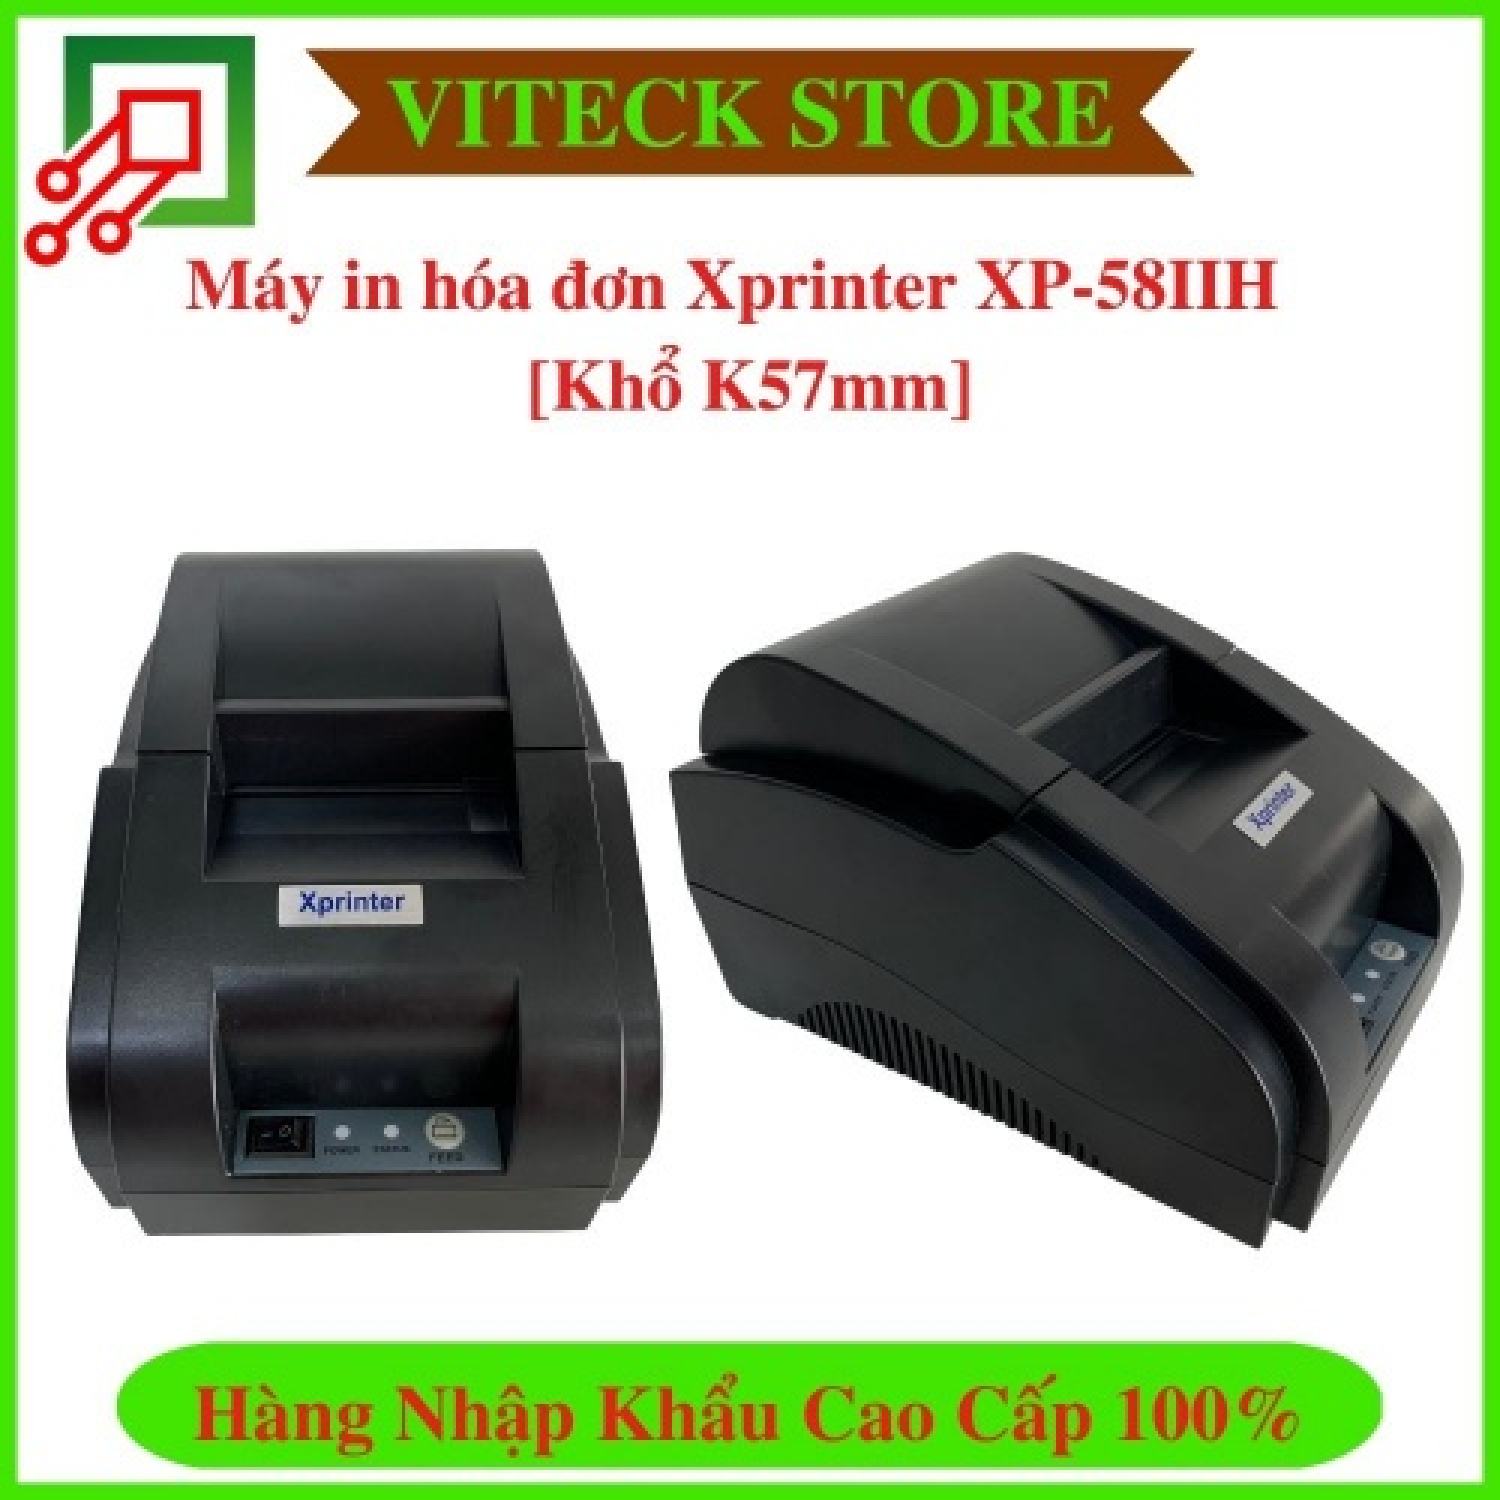 Máy in hóa đơn Xprinter XP-58IIH Cổng USB